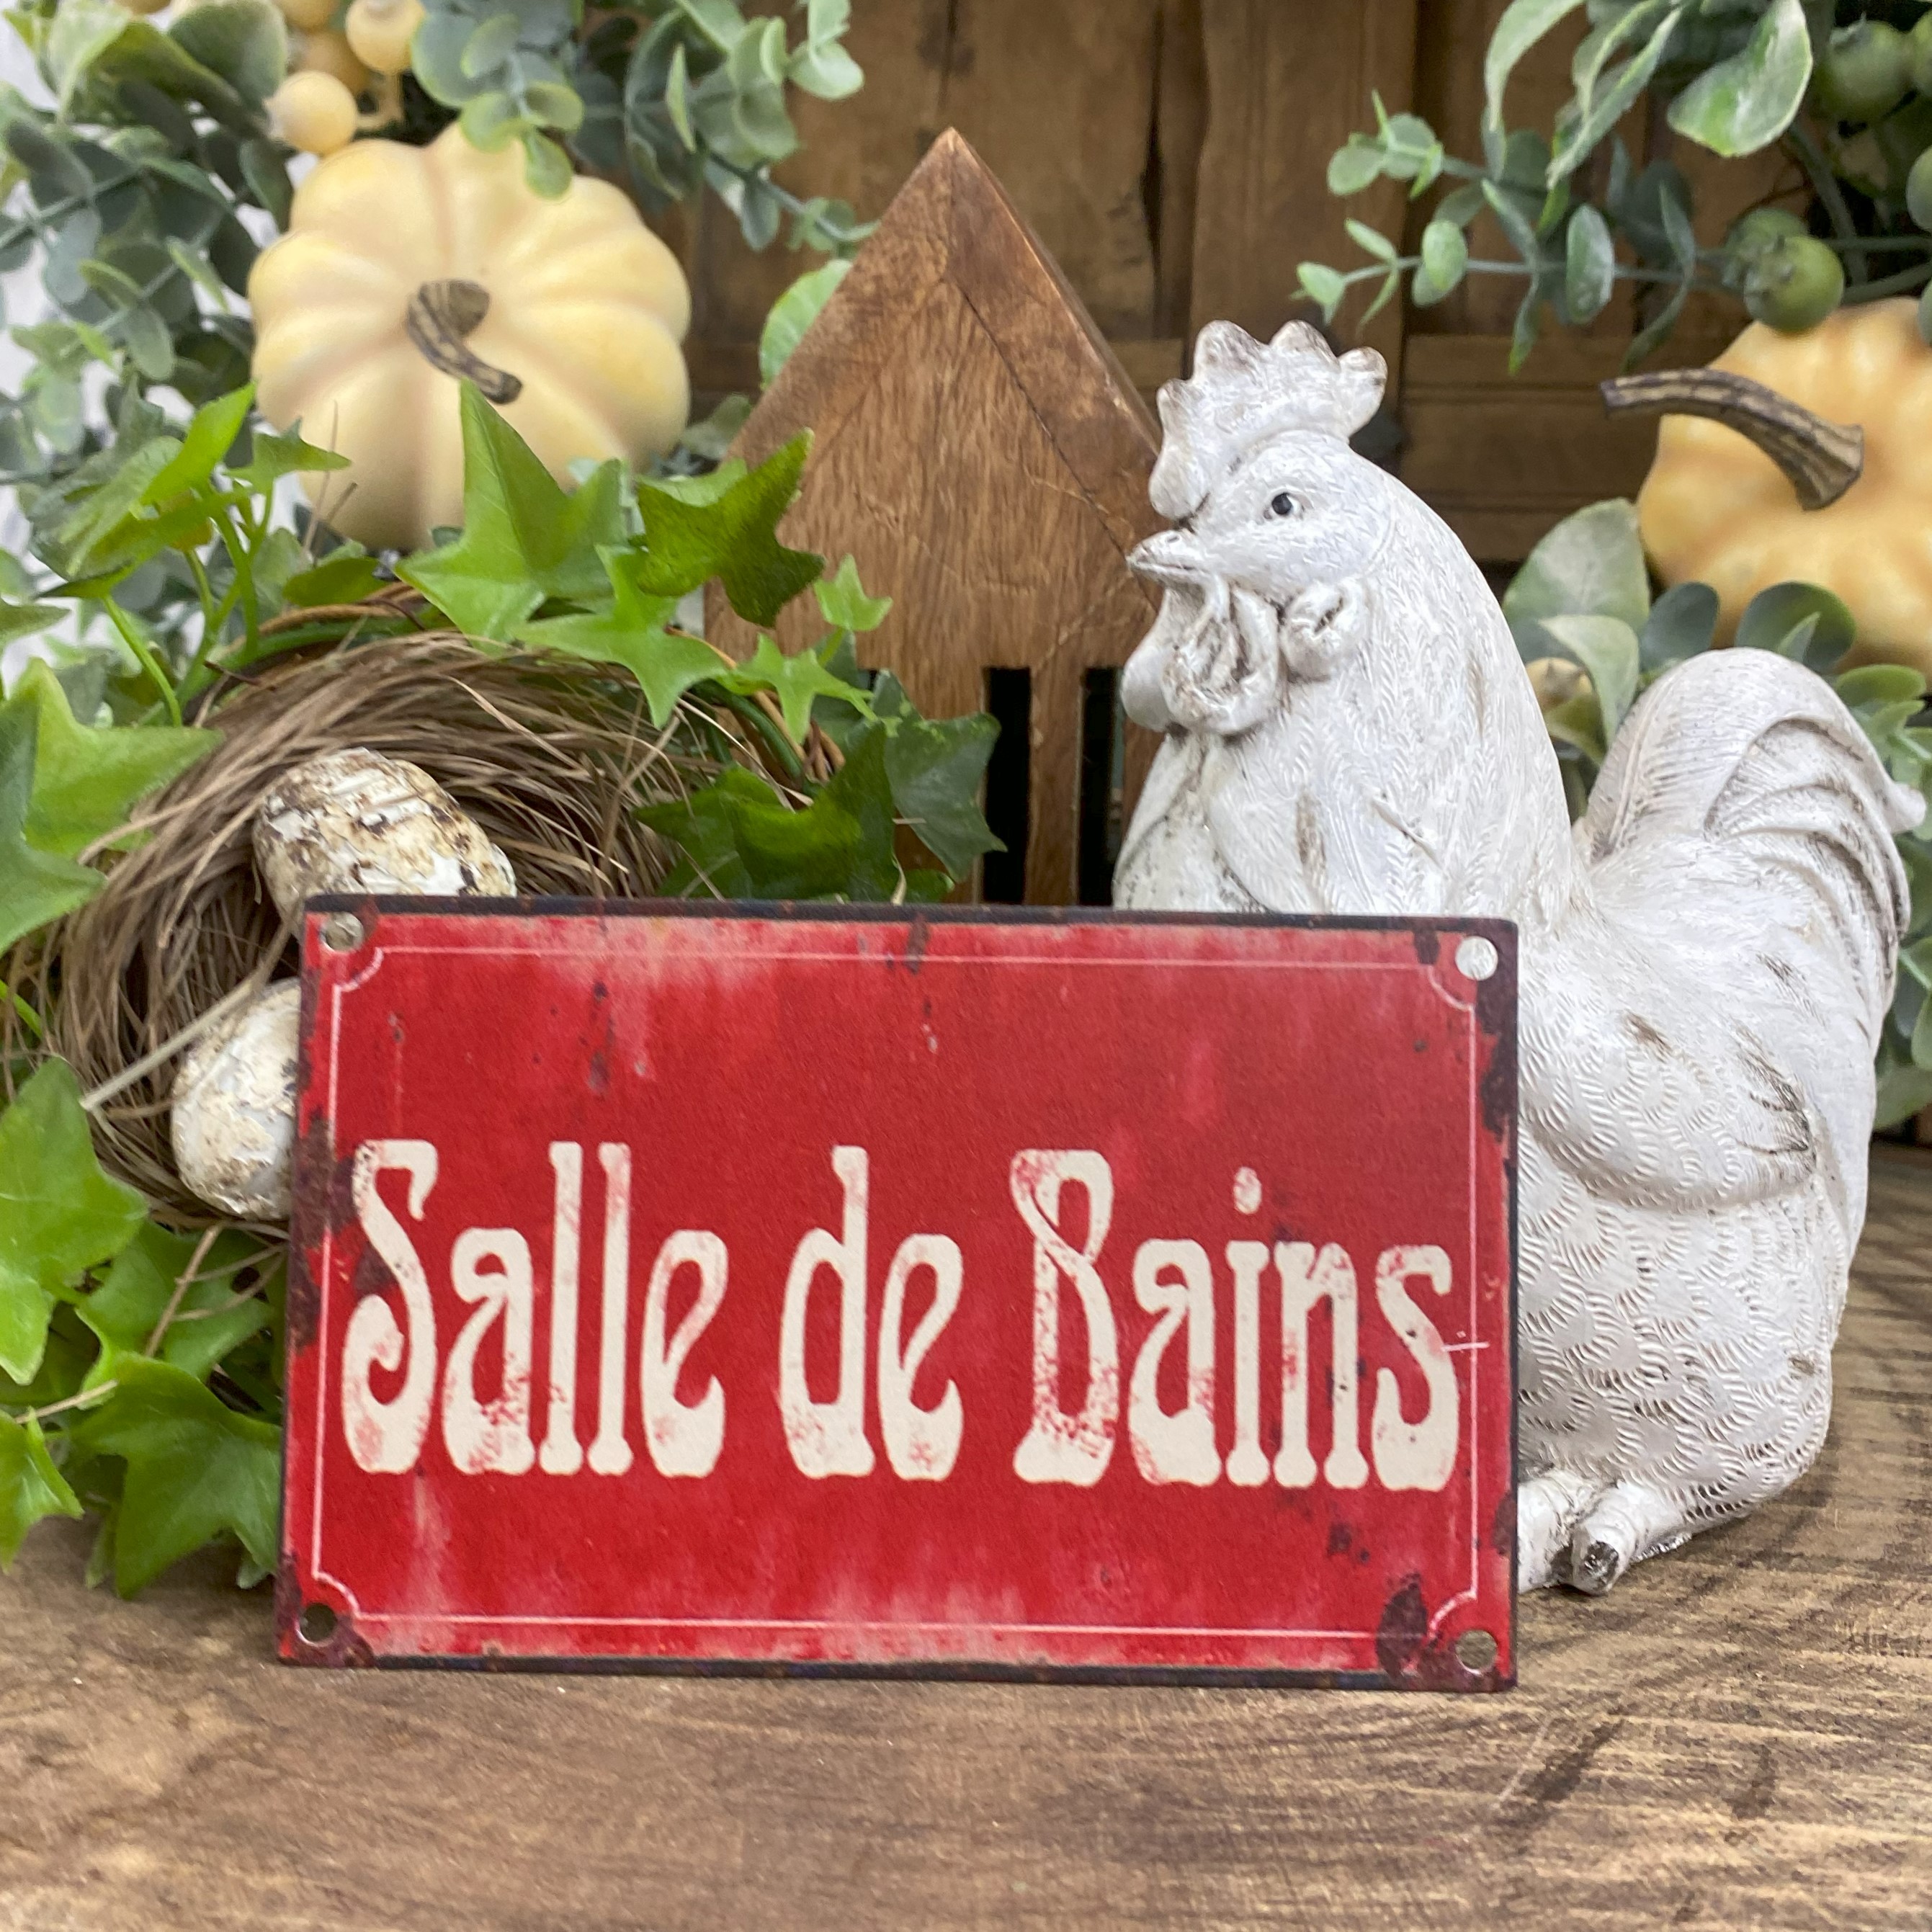 Vintage kovová tabuľka "Salle de Bains "  - Kúpelňa